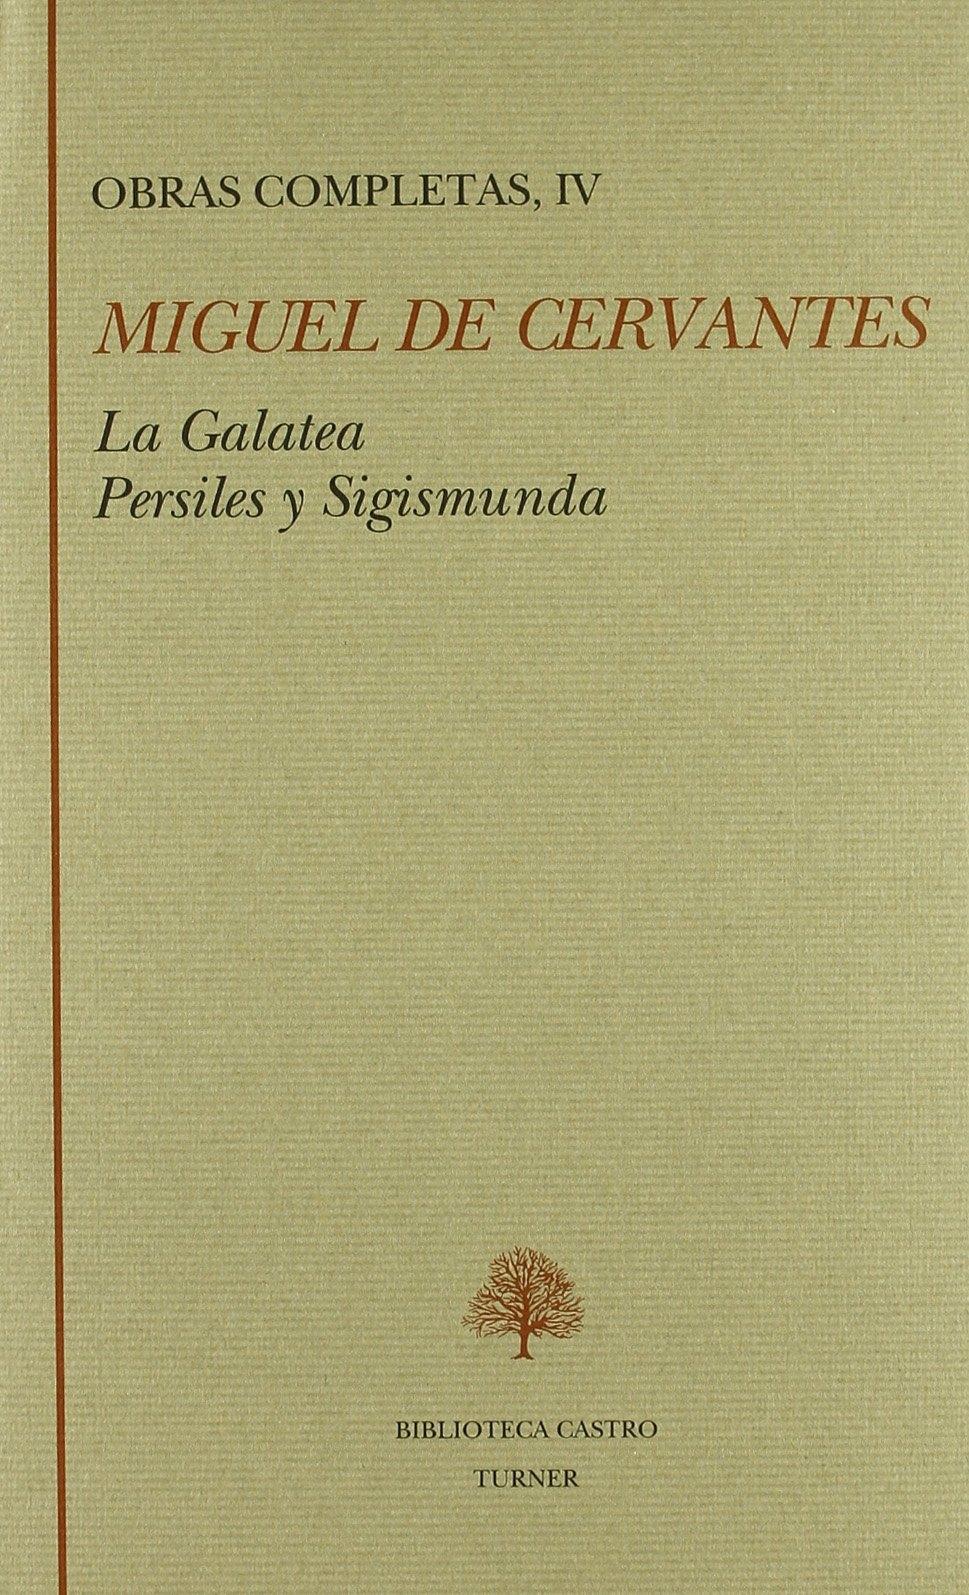 Obras Completas Iv "Galatea, La.Persiles y Segismunda". 